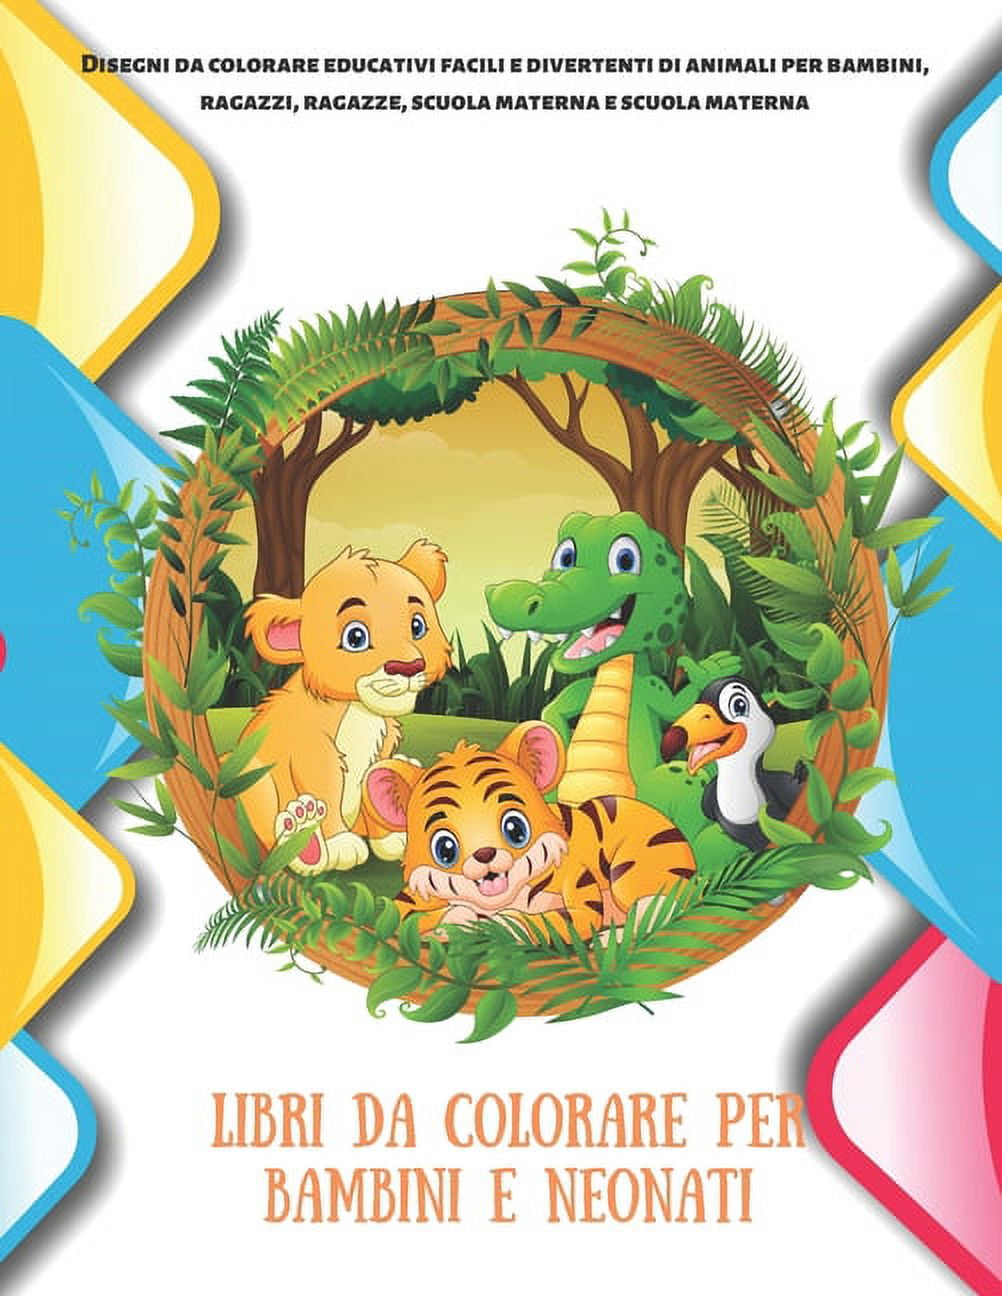 Libri da colorare per bambini e neonati - Disegni da colorare